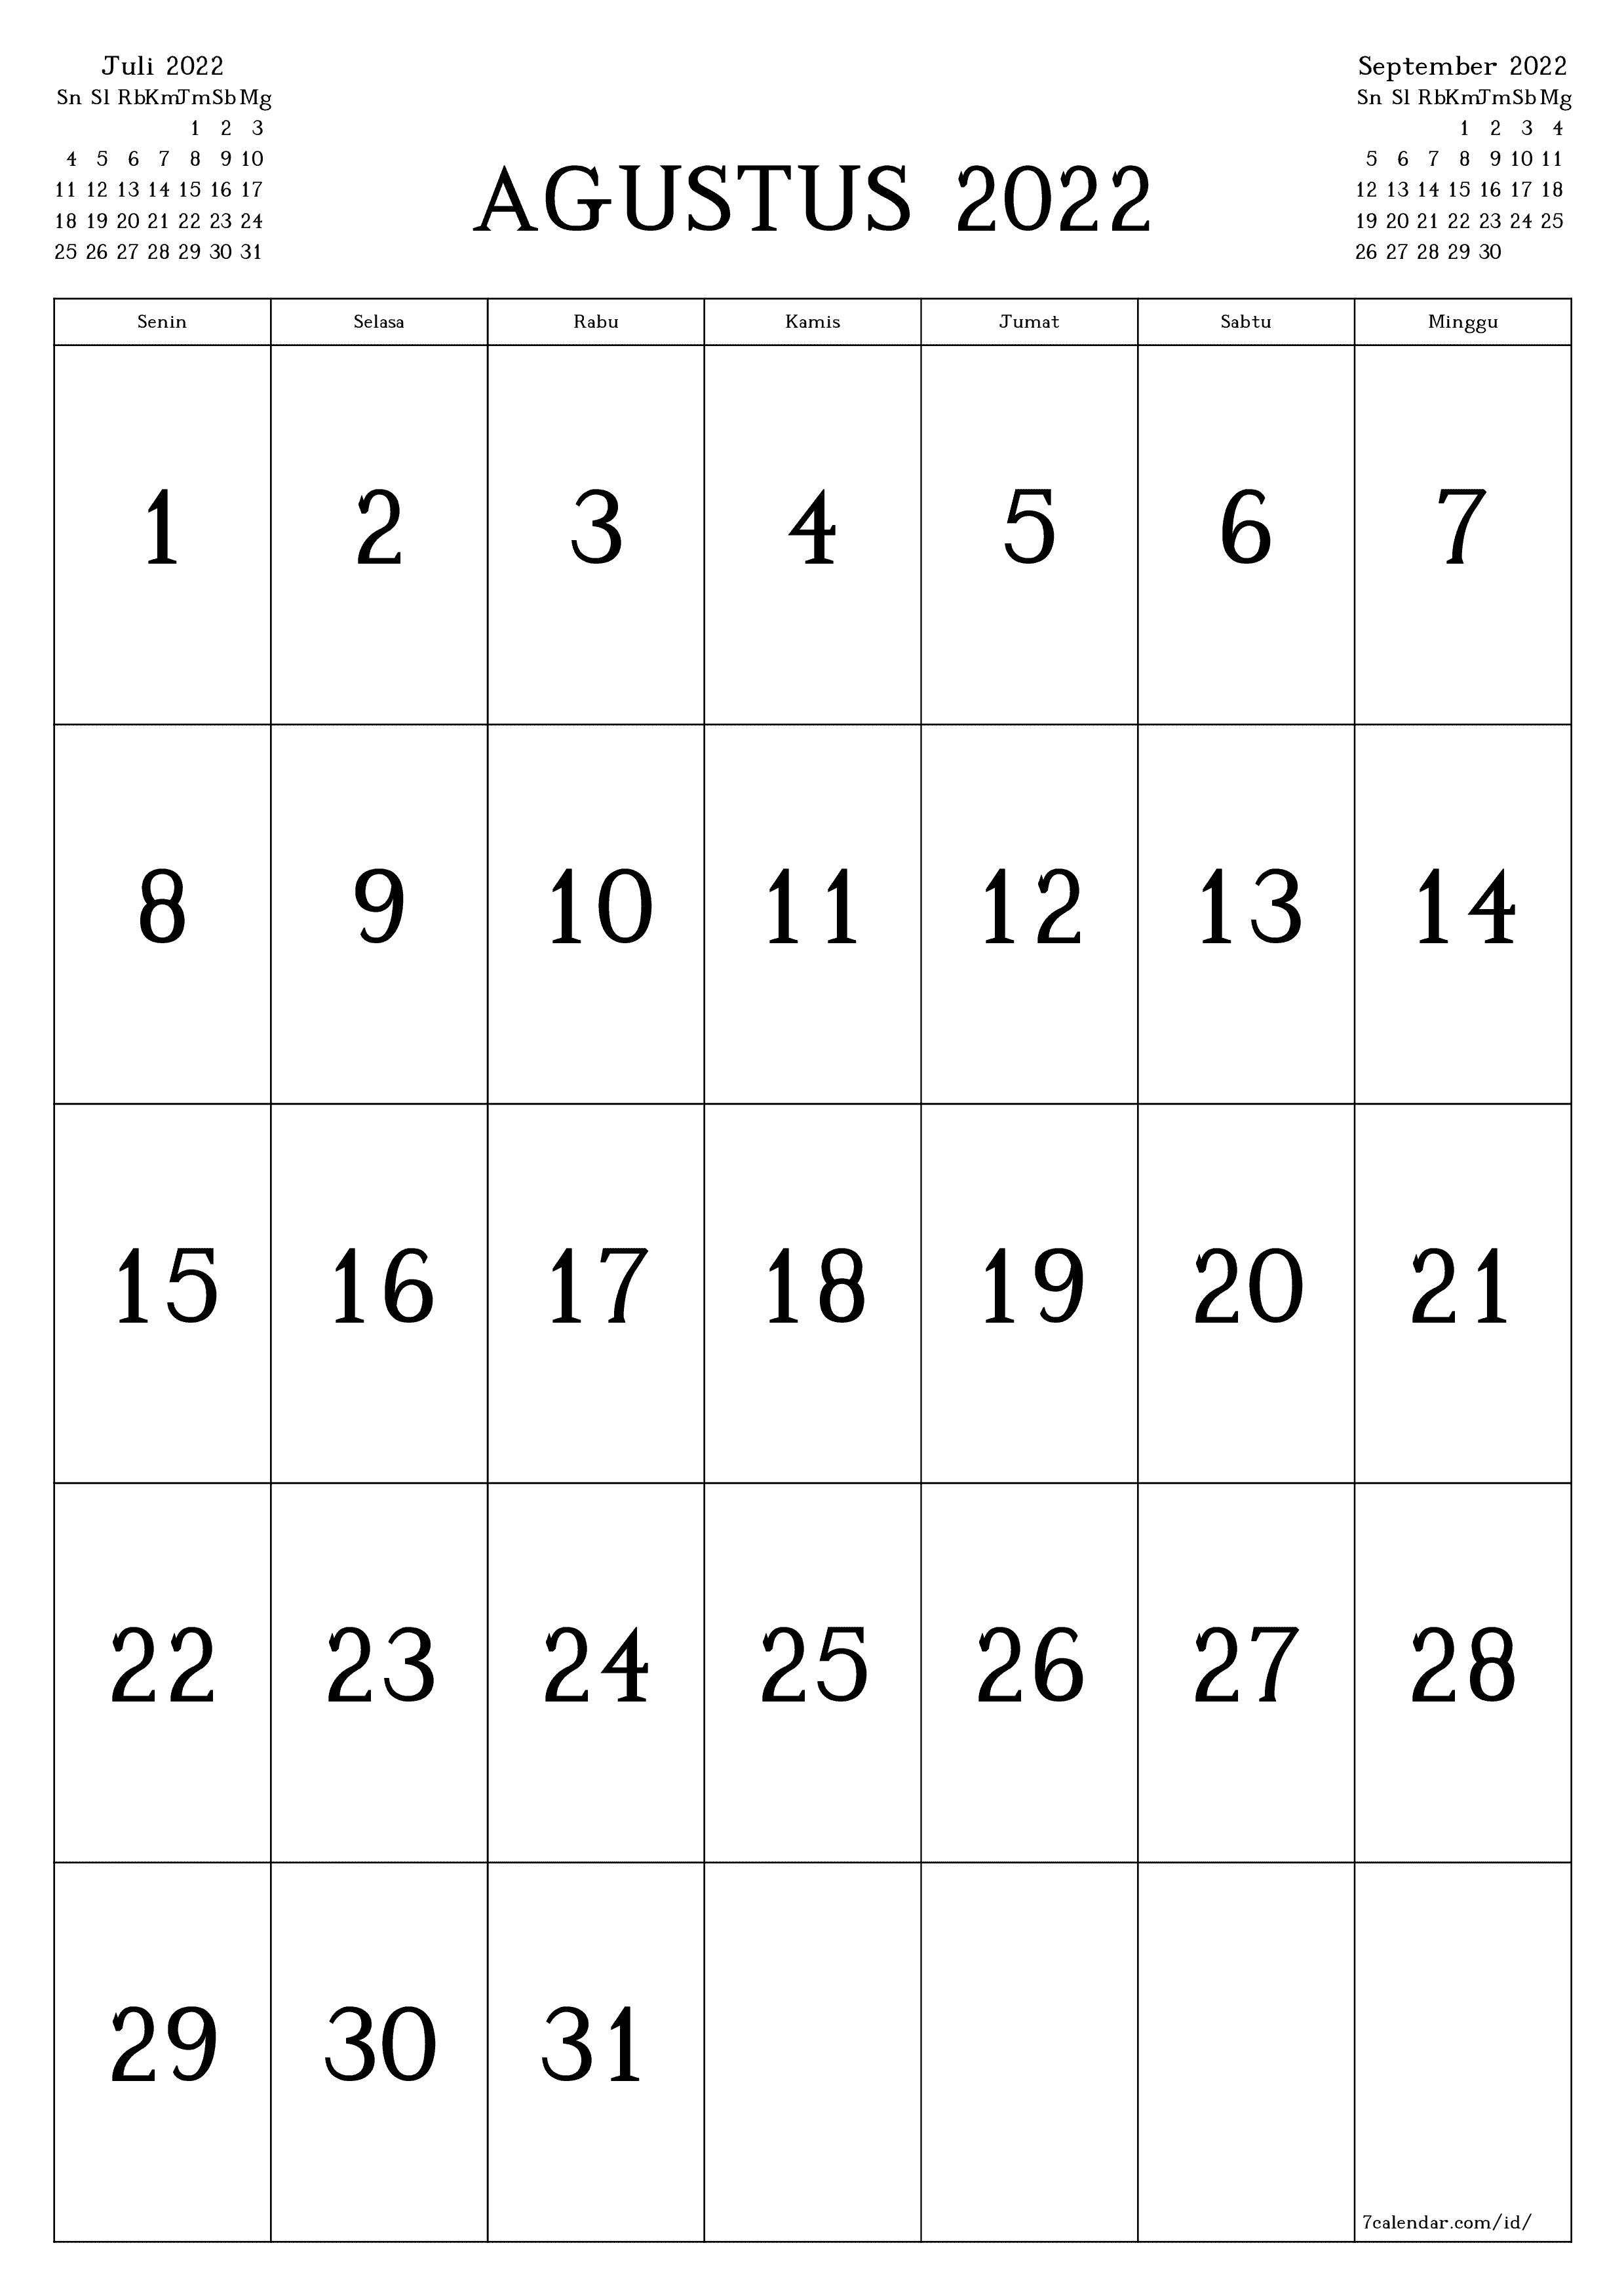 Kalender bulanan kosong untuk bulan Agustus 2022 simpan dan cetak ke PDF PNG Indonesian - 7calendar.com